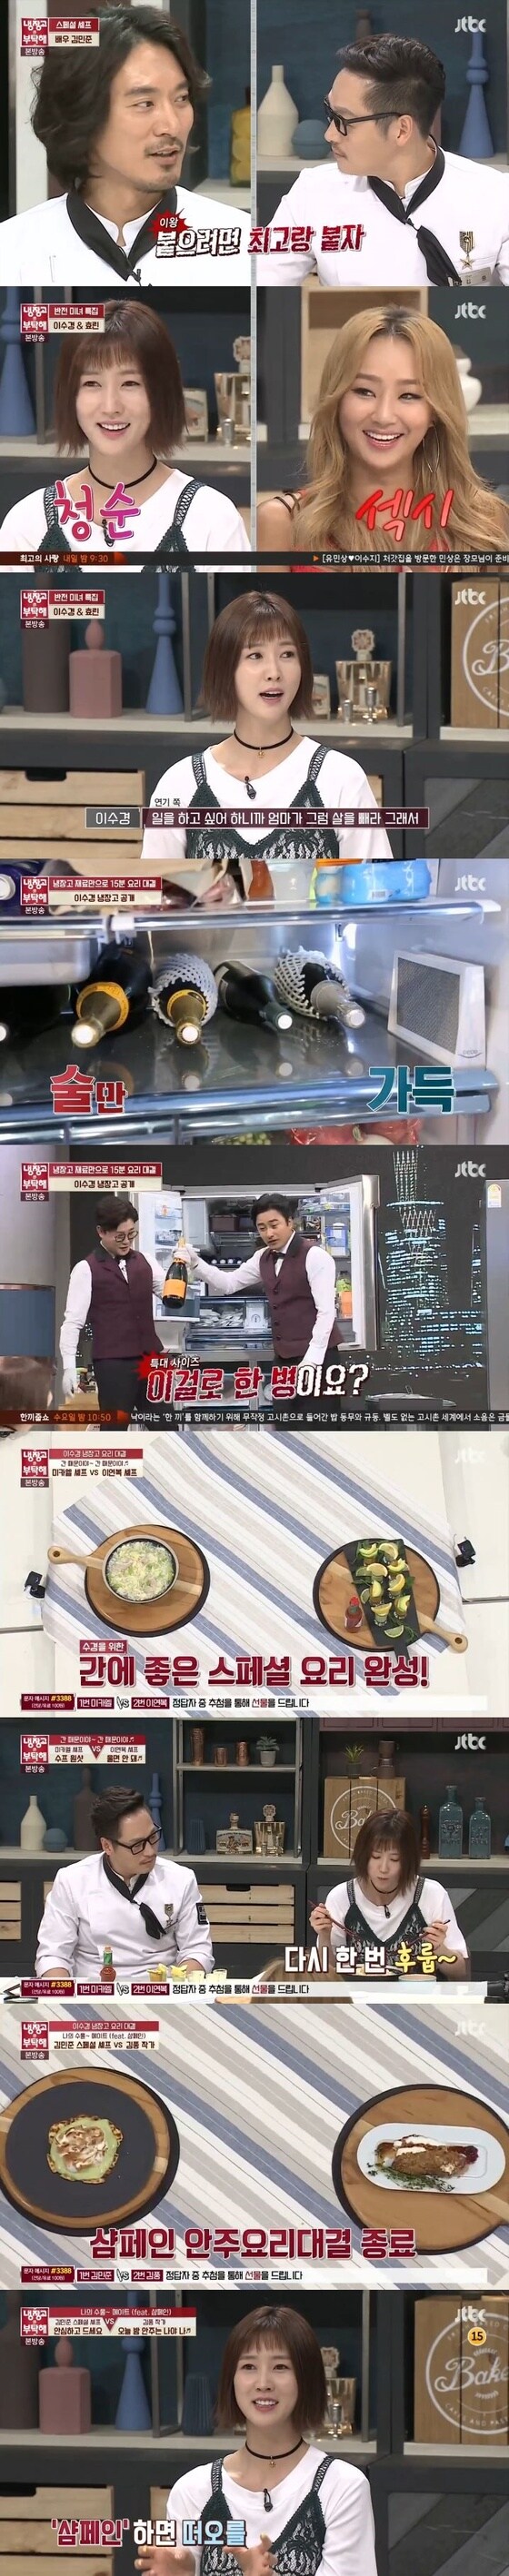 JTBC'냉장고를 부탁해'© News1